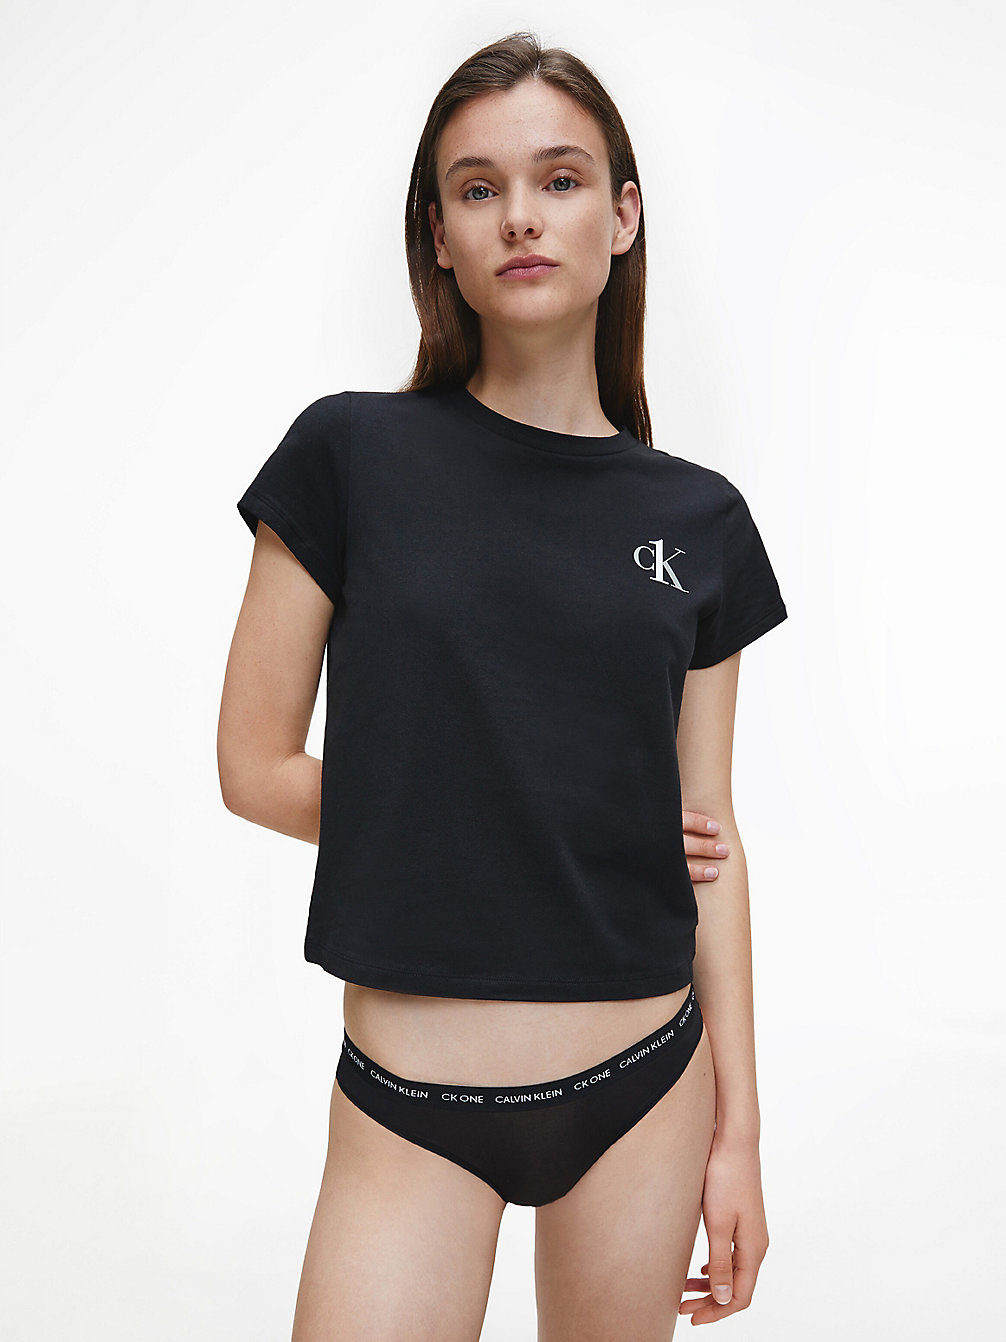 BLACK > Lounge-T-Shirt – CK One > undefined Damen - Calvin Klein